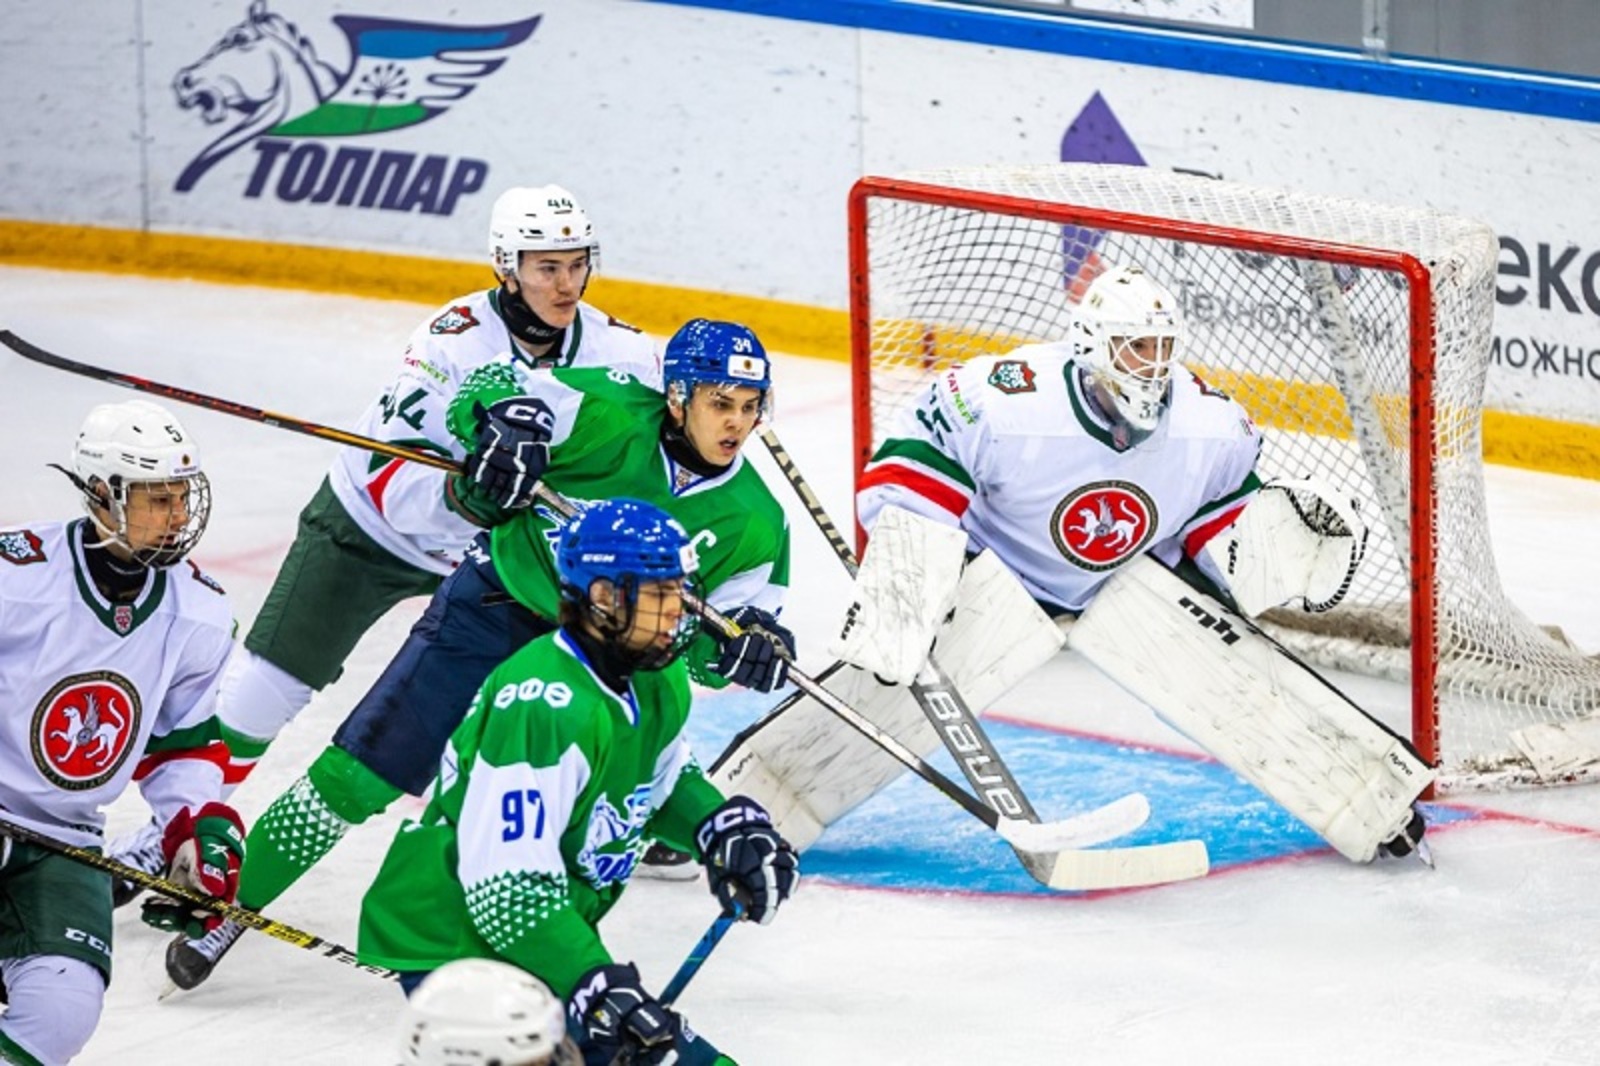 Казанские хоккеисты взяли реванш у «Толпара»